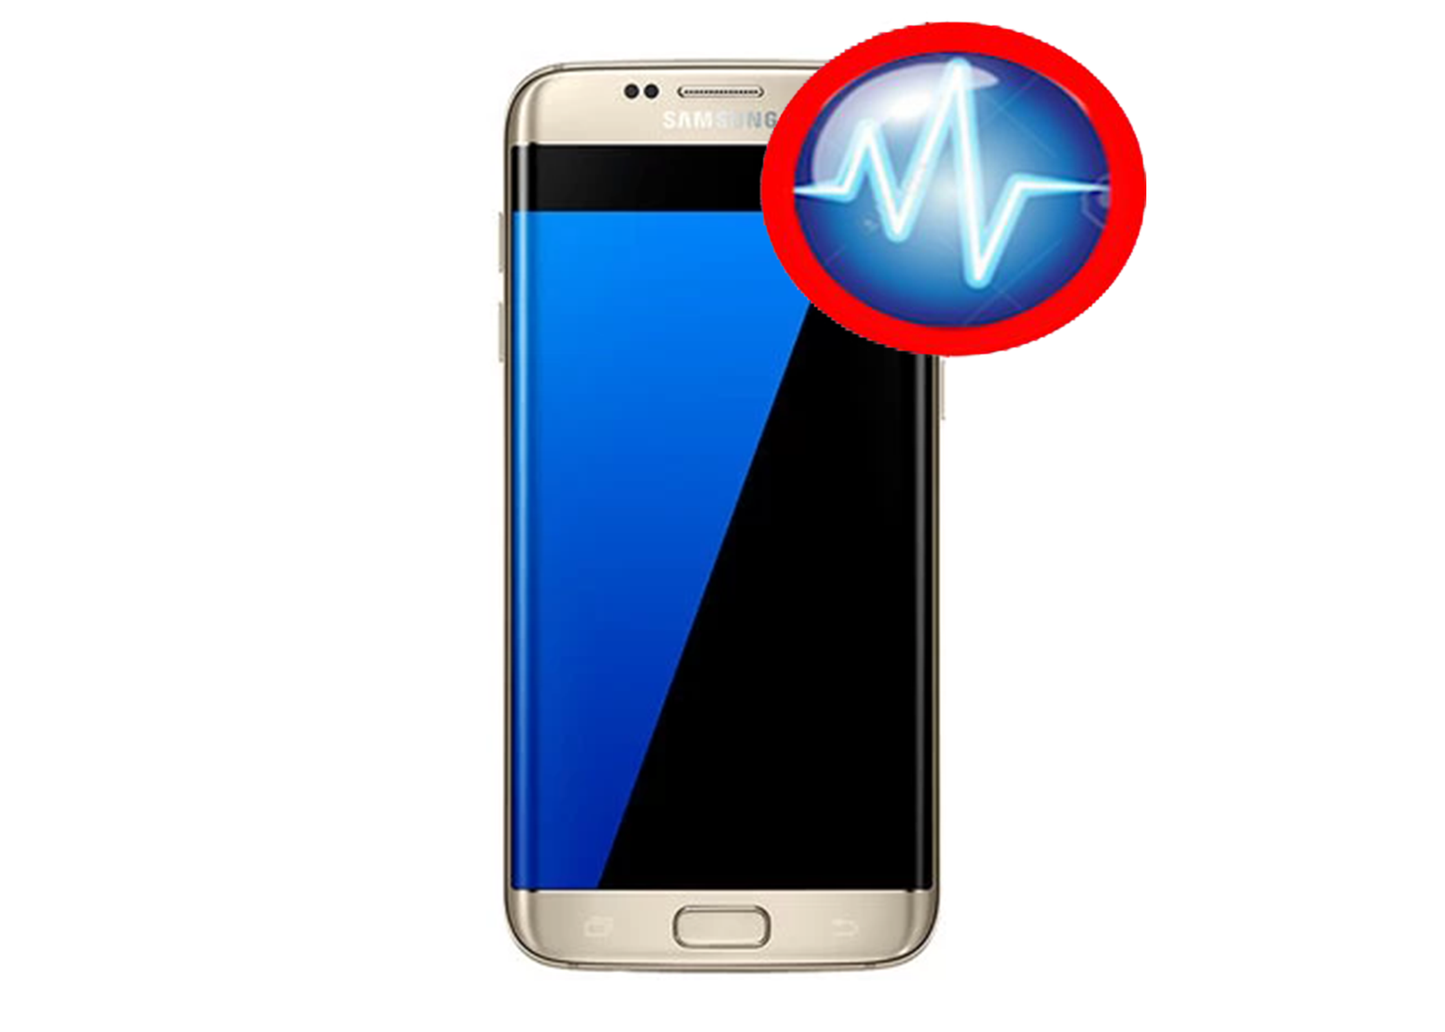 Samsung Galaxy S7 edge Free Diagnostic Service